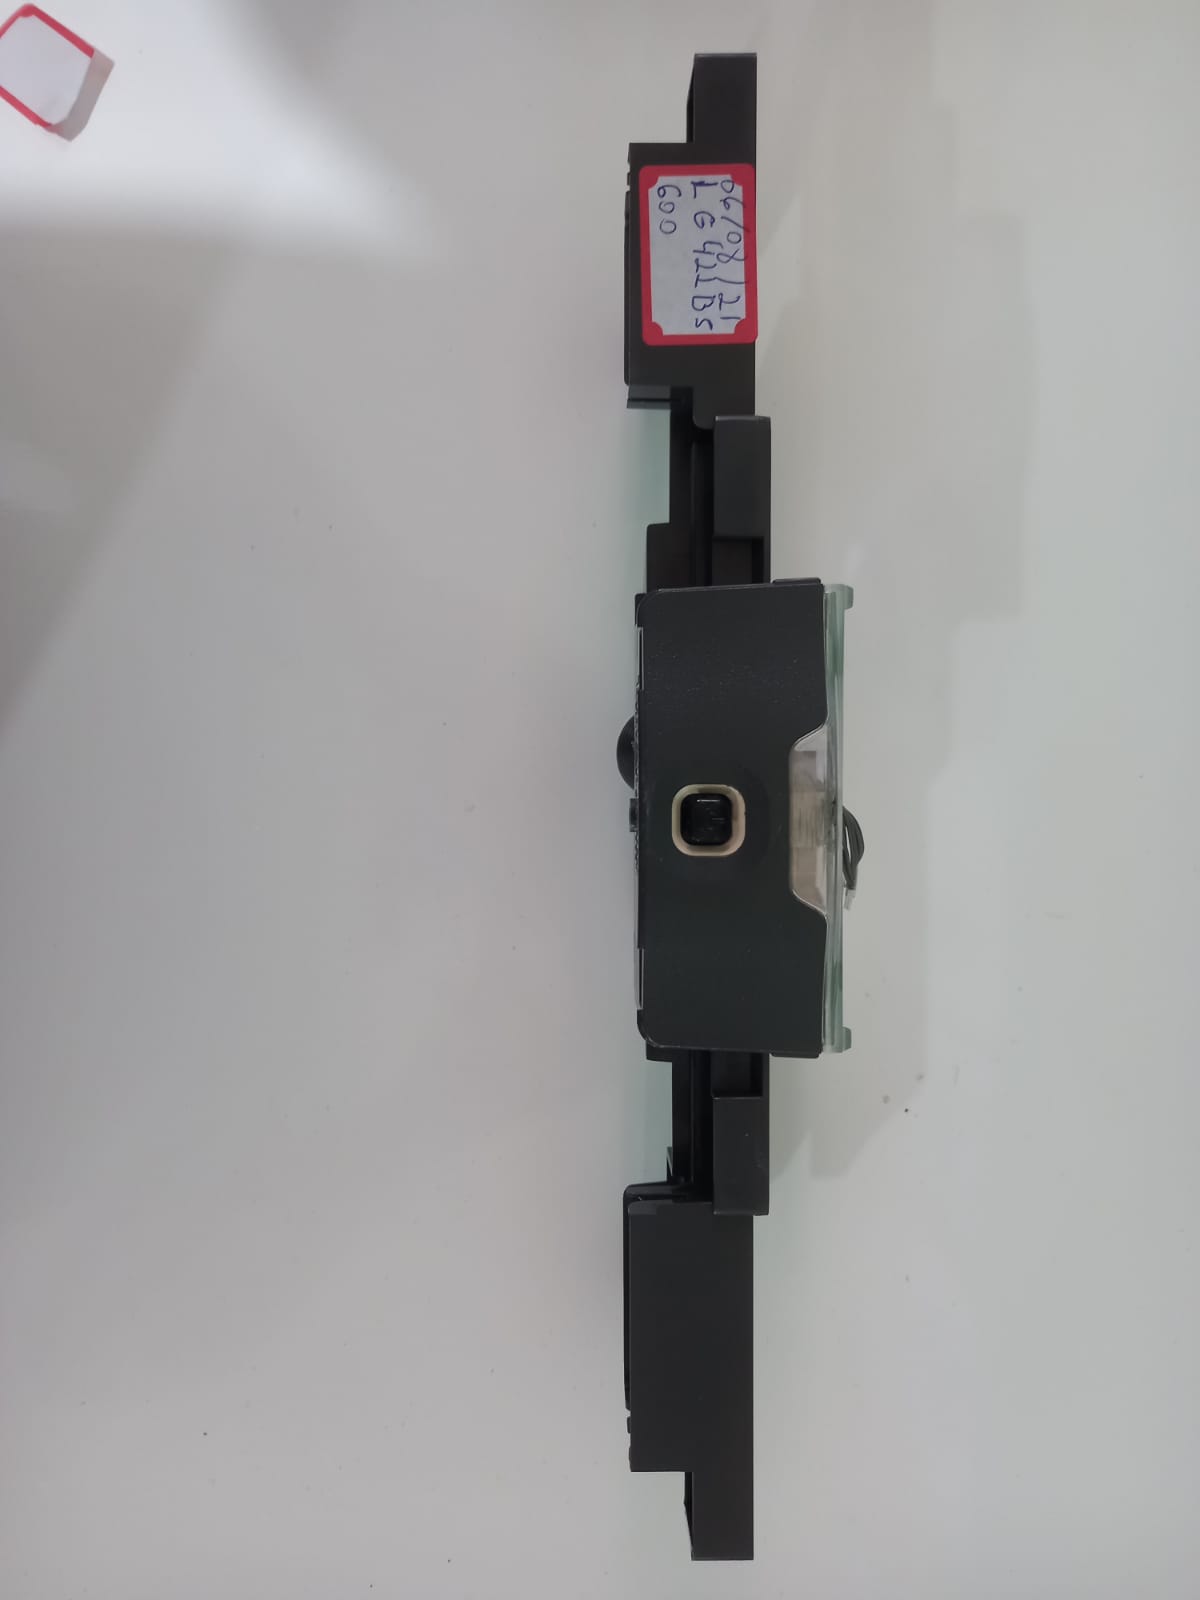 Placa Sensor Controle Remoto com acabamento p/ TV LG 42LB5600